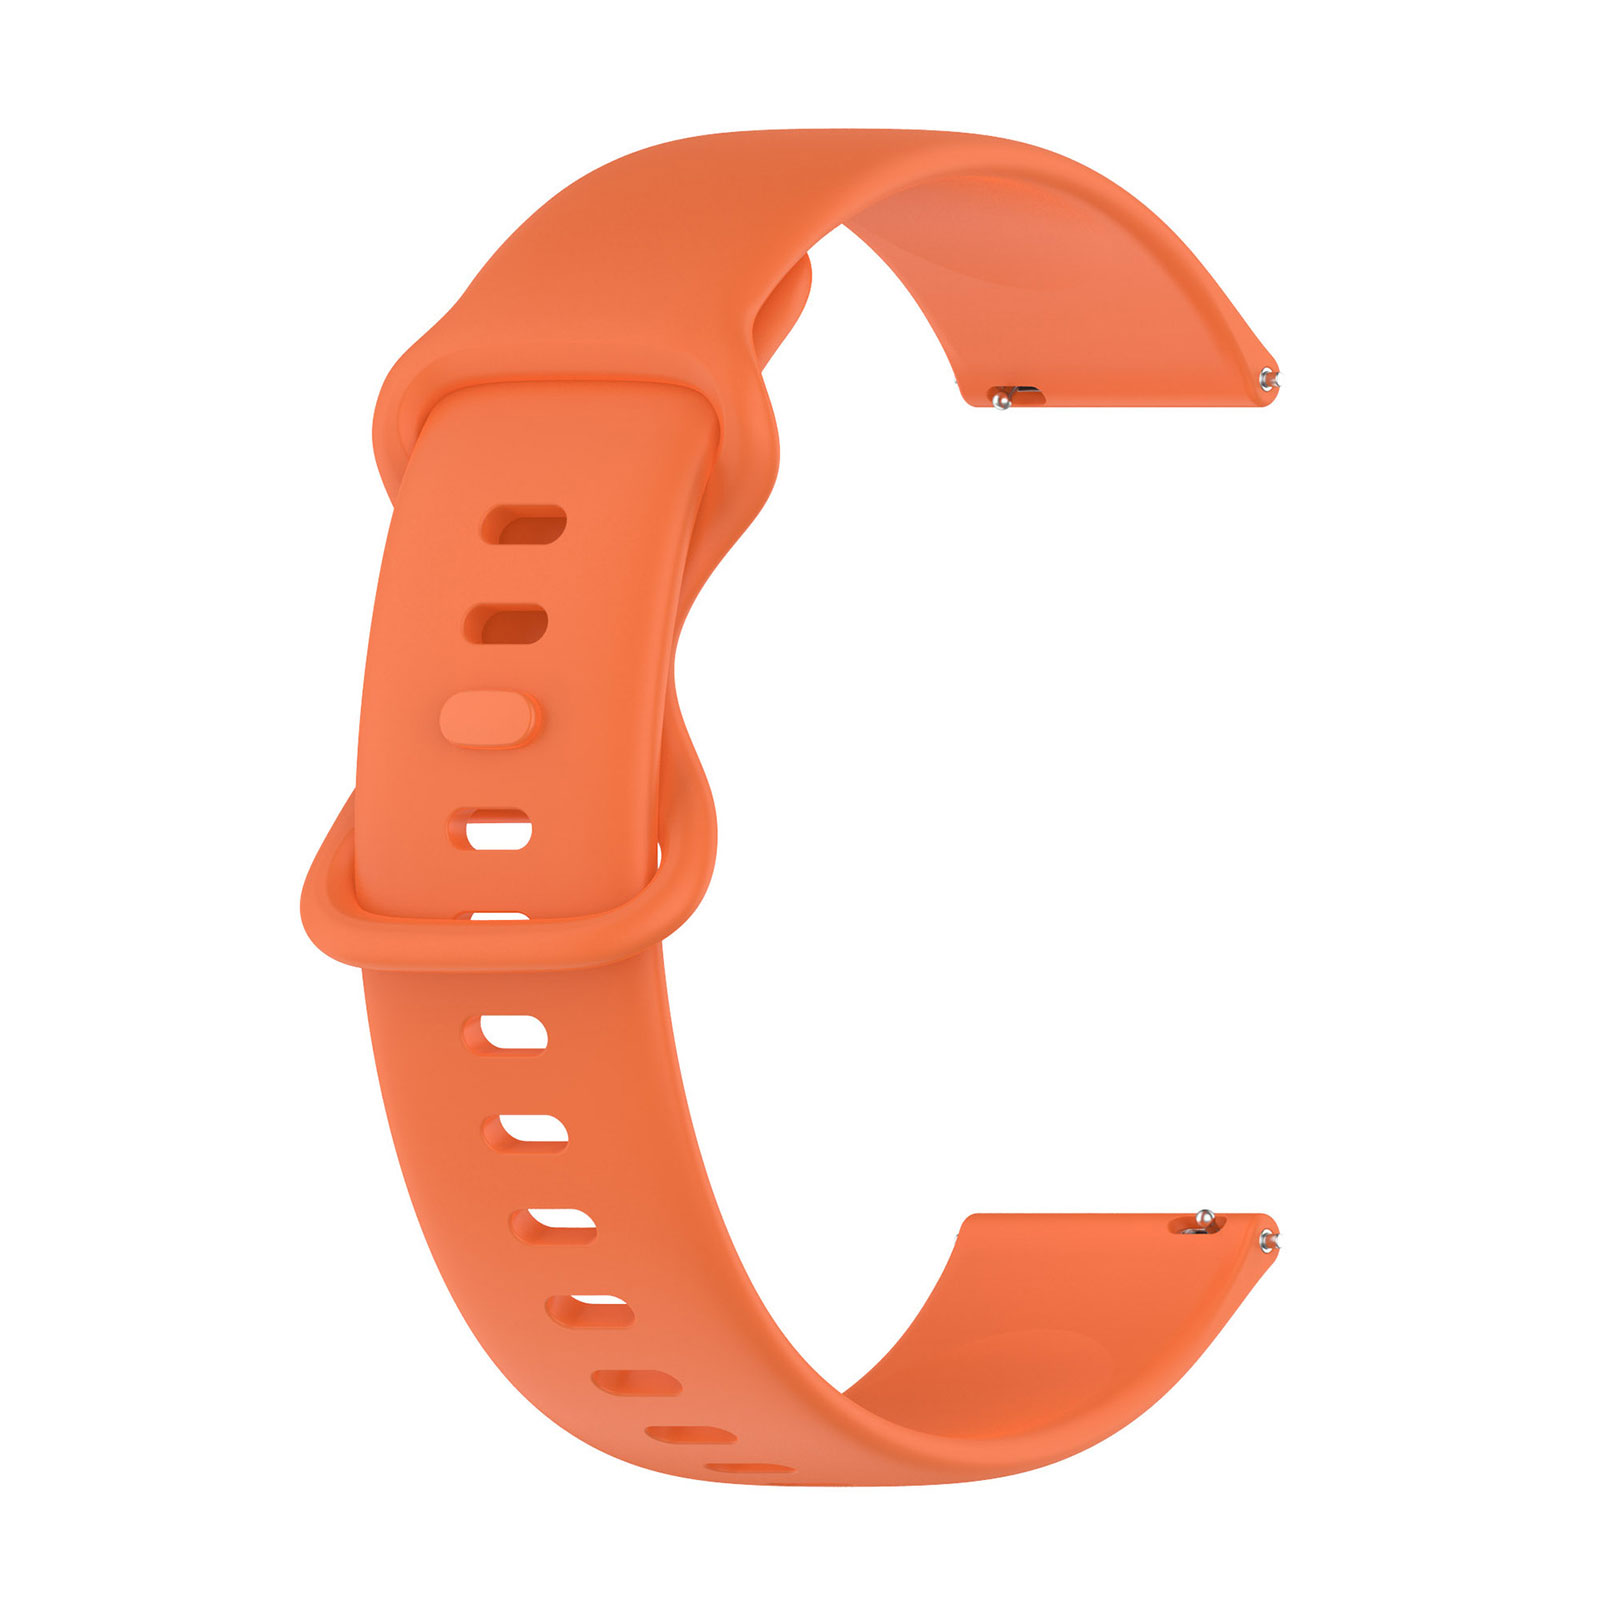 Garmin ガーミン vivoactive 5 スマートウォッチ シリコン素材 腕時計ベルト スポーツ ベルト 交換用 替えベルト 幅22mm  おしゃれ 腕時計バンド 交換ベルト